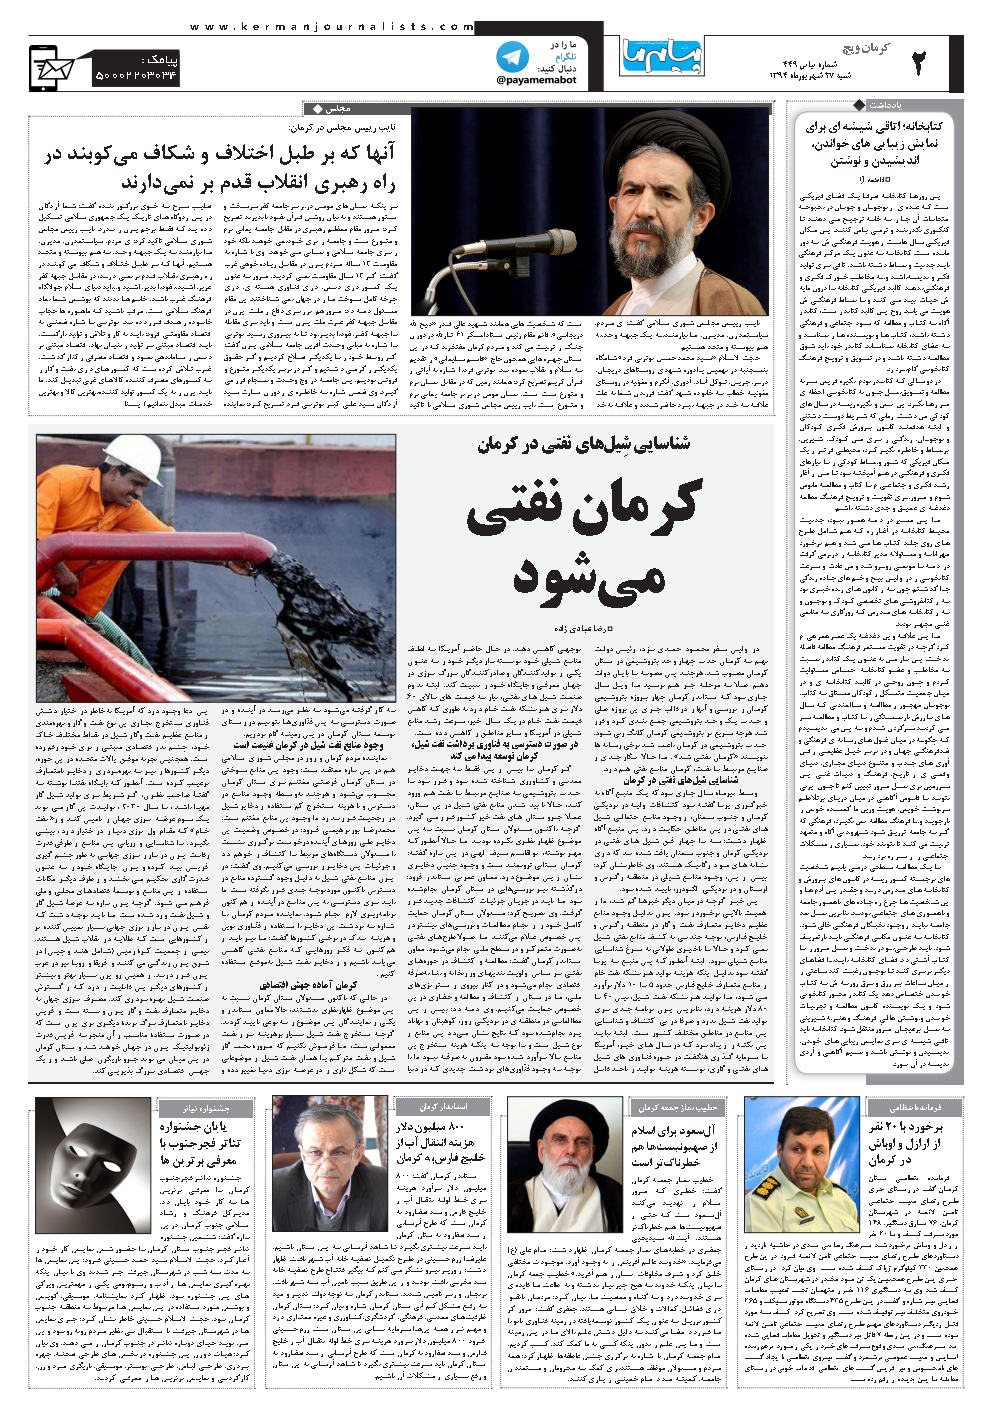 صفحه کرمان ویچ شماره شماره ۴۴۹ روزنامه پیام ما